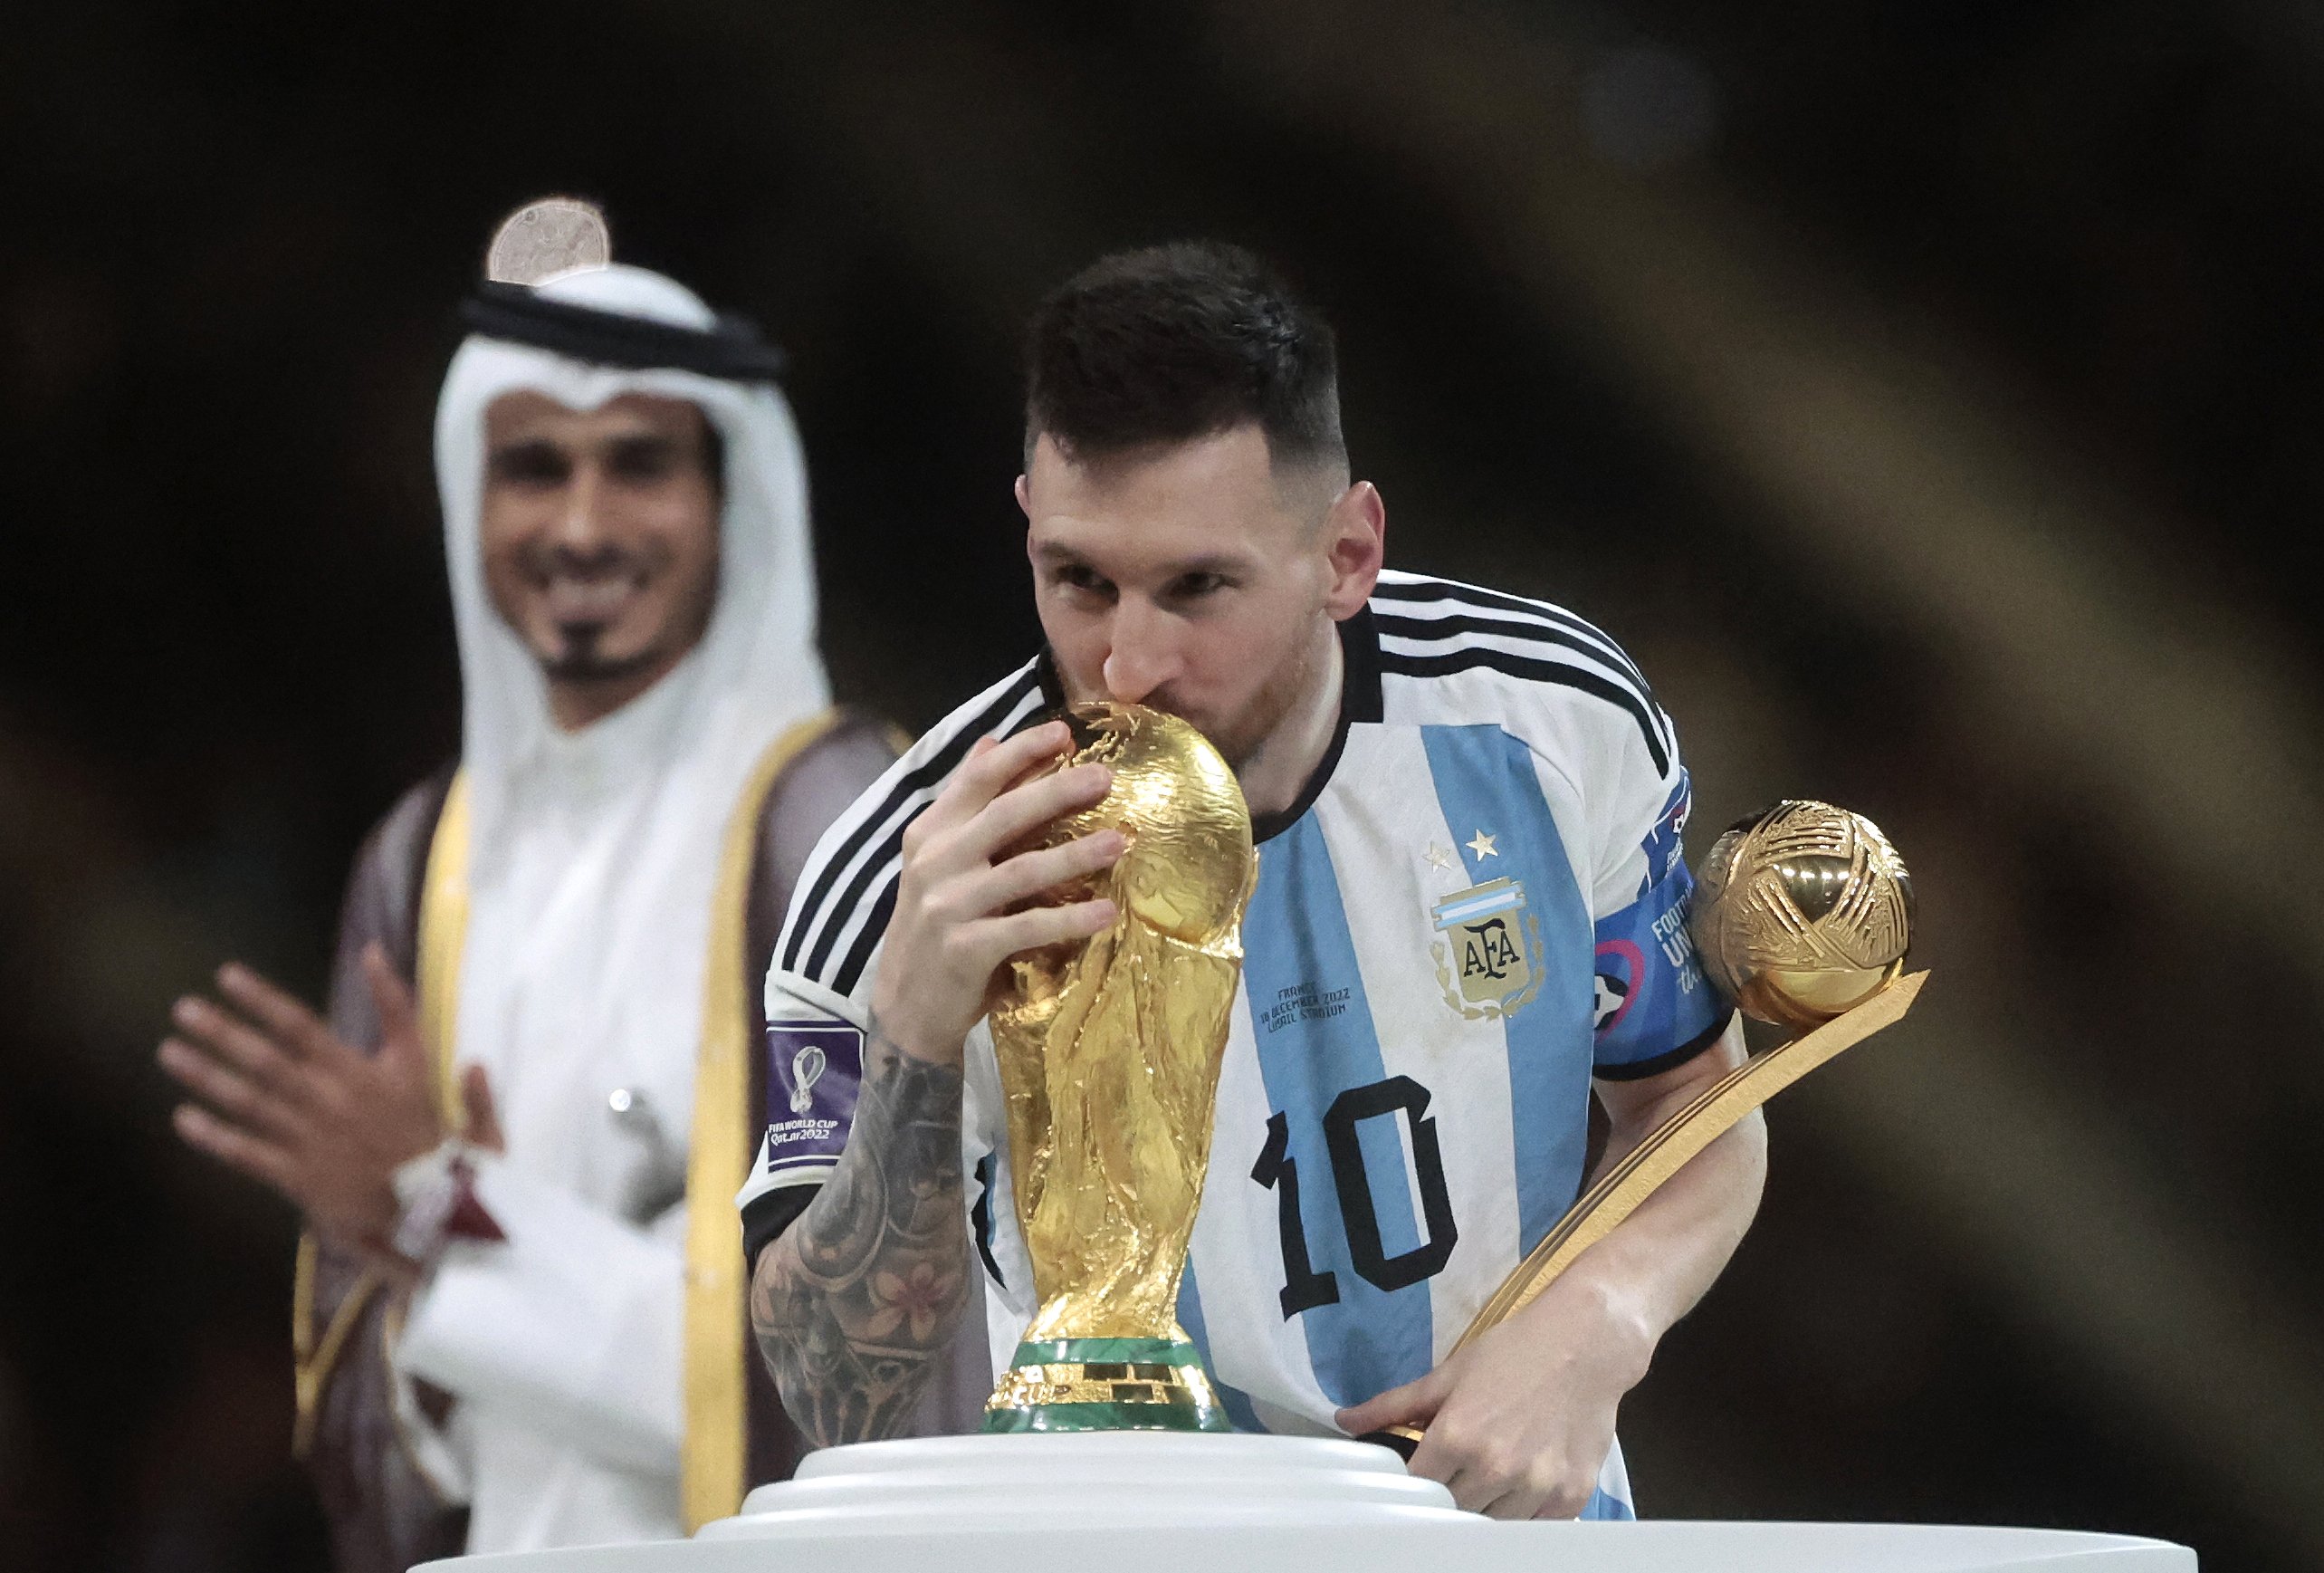 El debat s'ha acabat: Leo Messi ja és el millor futbolista de tots els temps